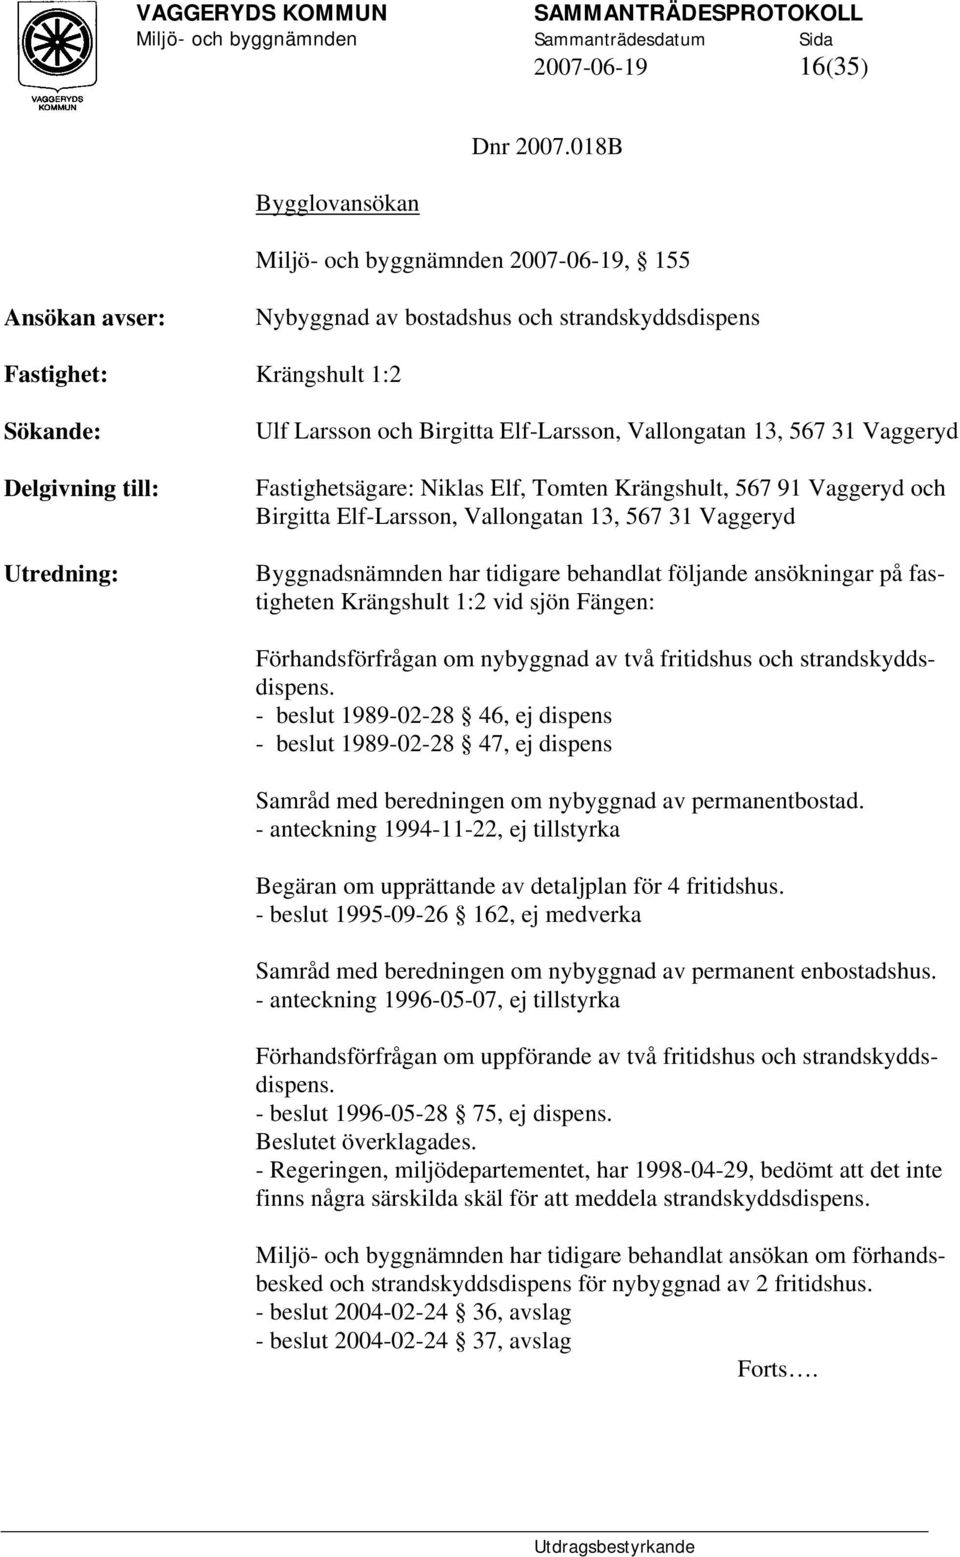 Elf-Larsson, Vallongatan 13, 567 31 Vaggeryd Fastighetsägare: Niklas Elf, Tomten Krängshult, 567 91 Vaggeryd och Birgitta Elf-Larsson, Vallongatan 13, 567 31 Vaggeryd Byggnadsnämnden har tidigare